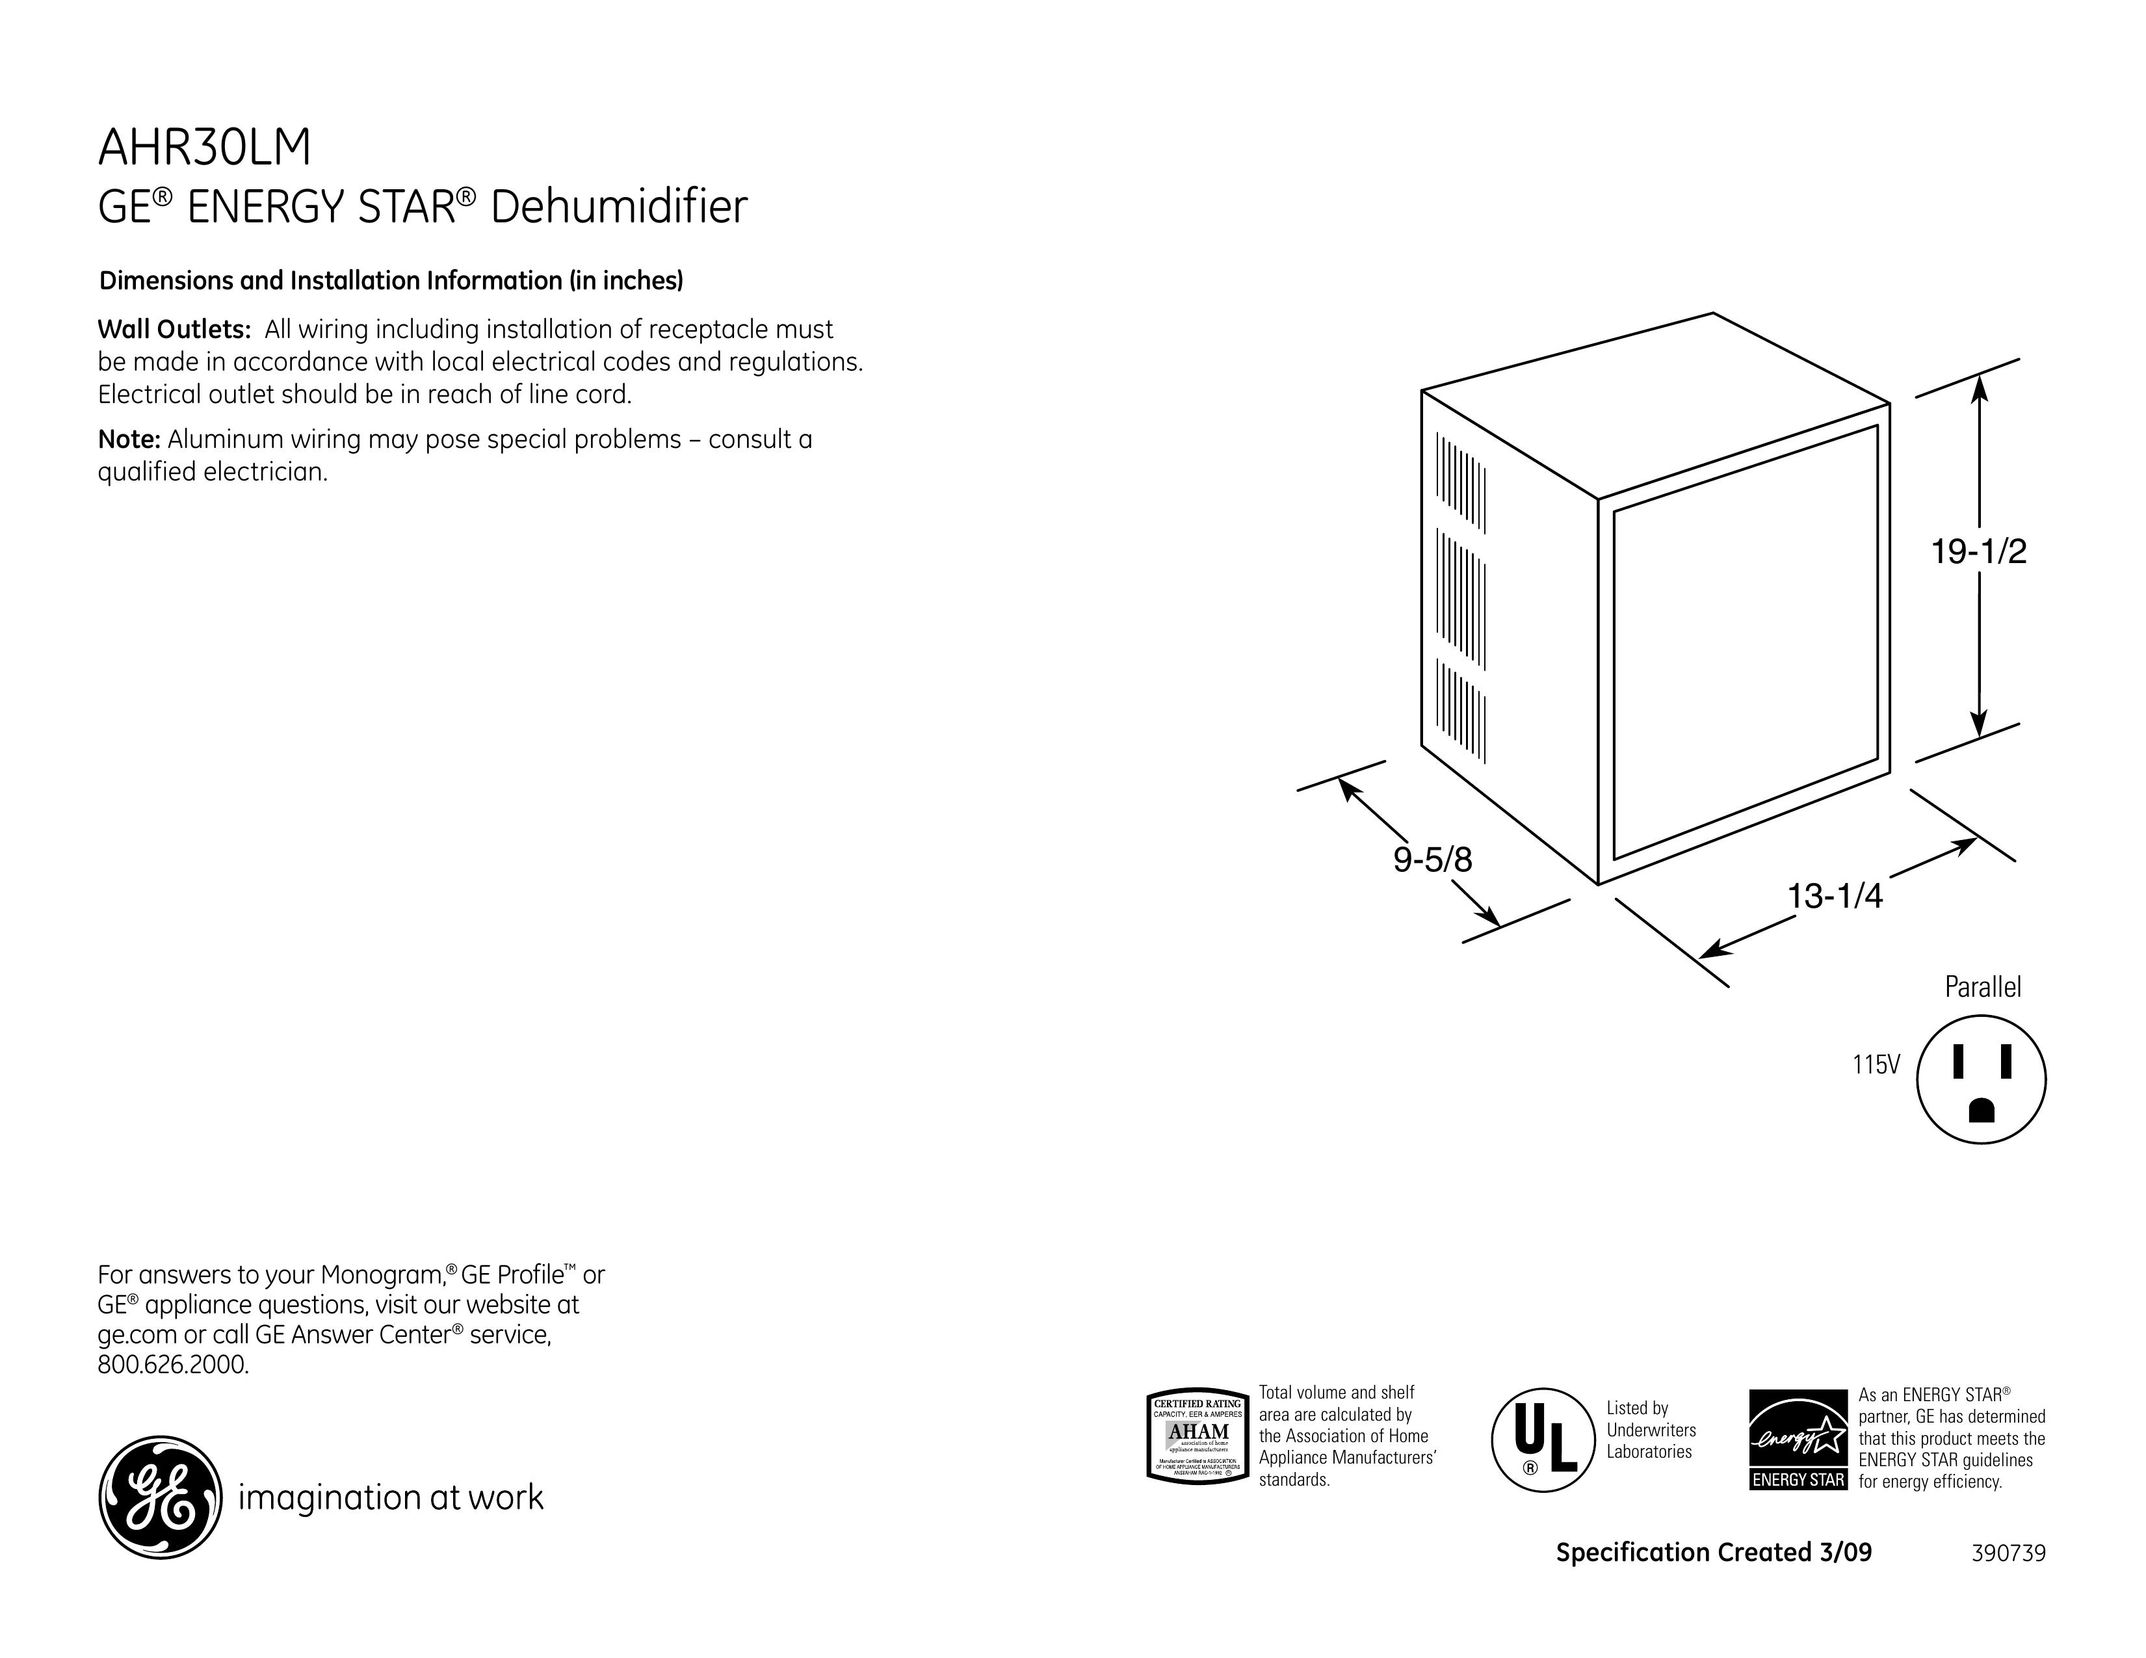 GE AHR30LM Dehumidifier User Manual